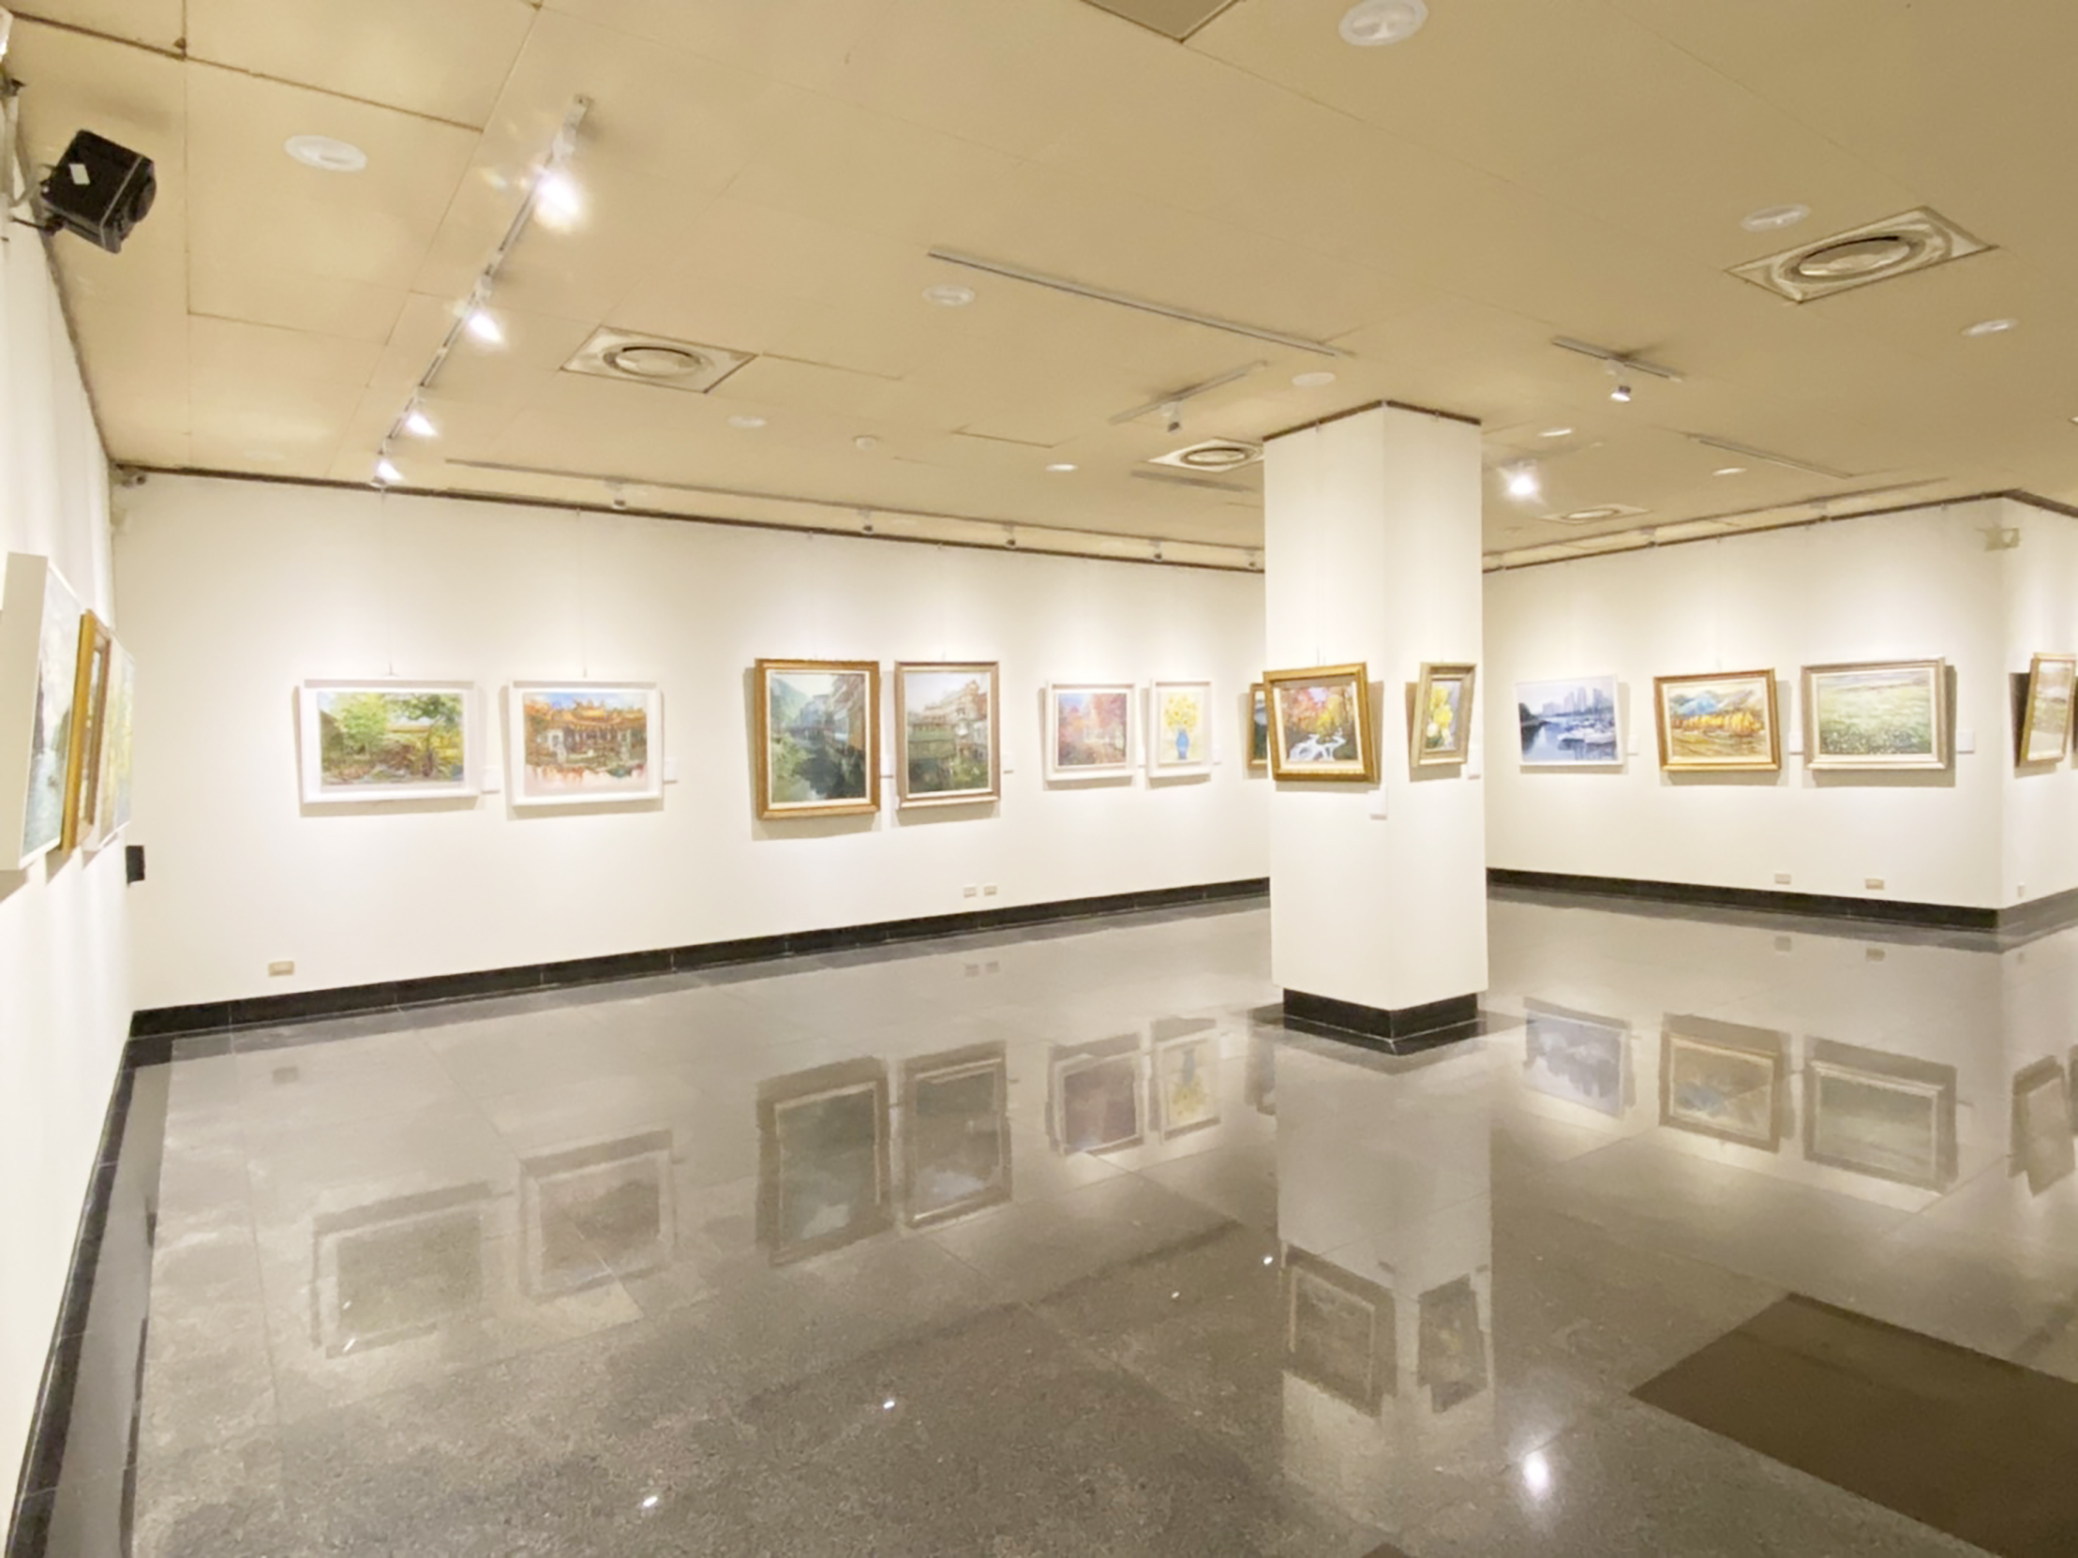 世紀揚藝 -中華民國跨世紀油畫研究會2020年度大展展覽作品